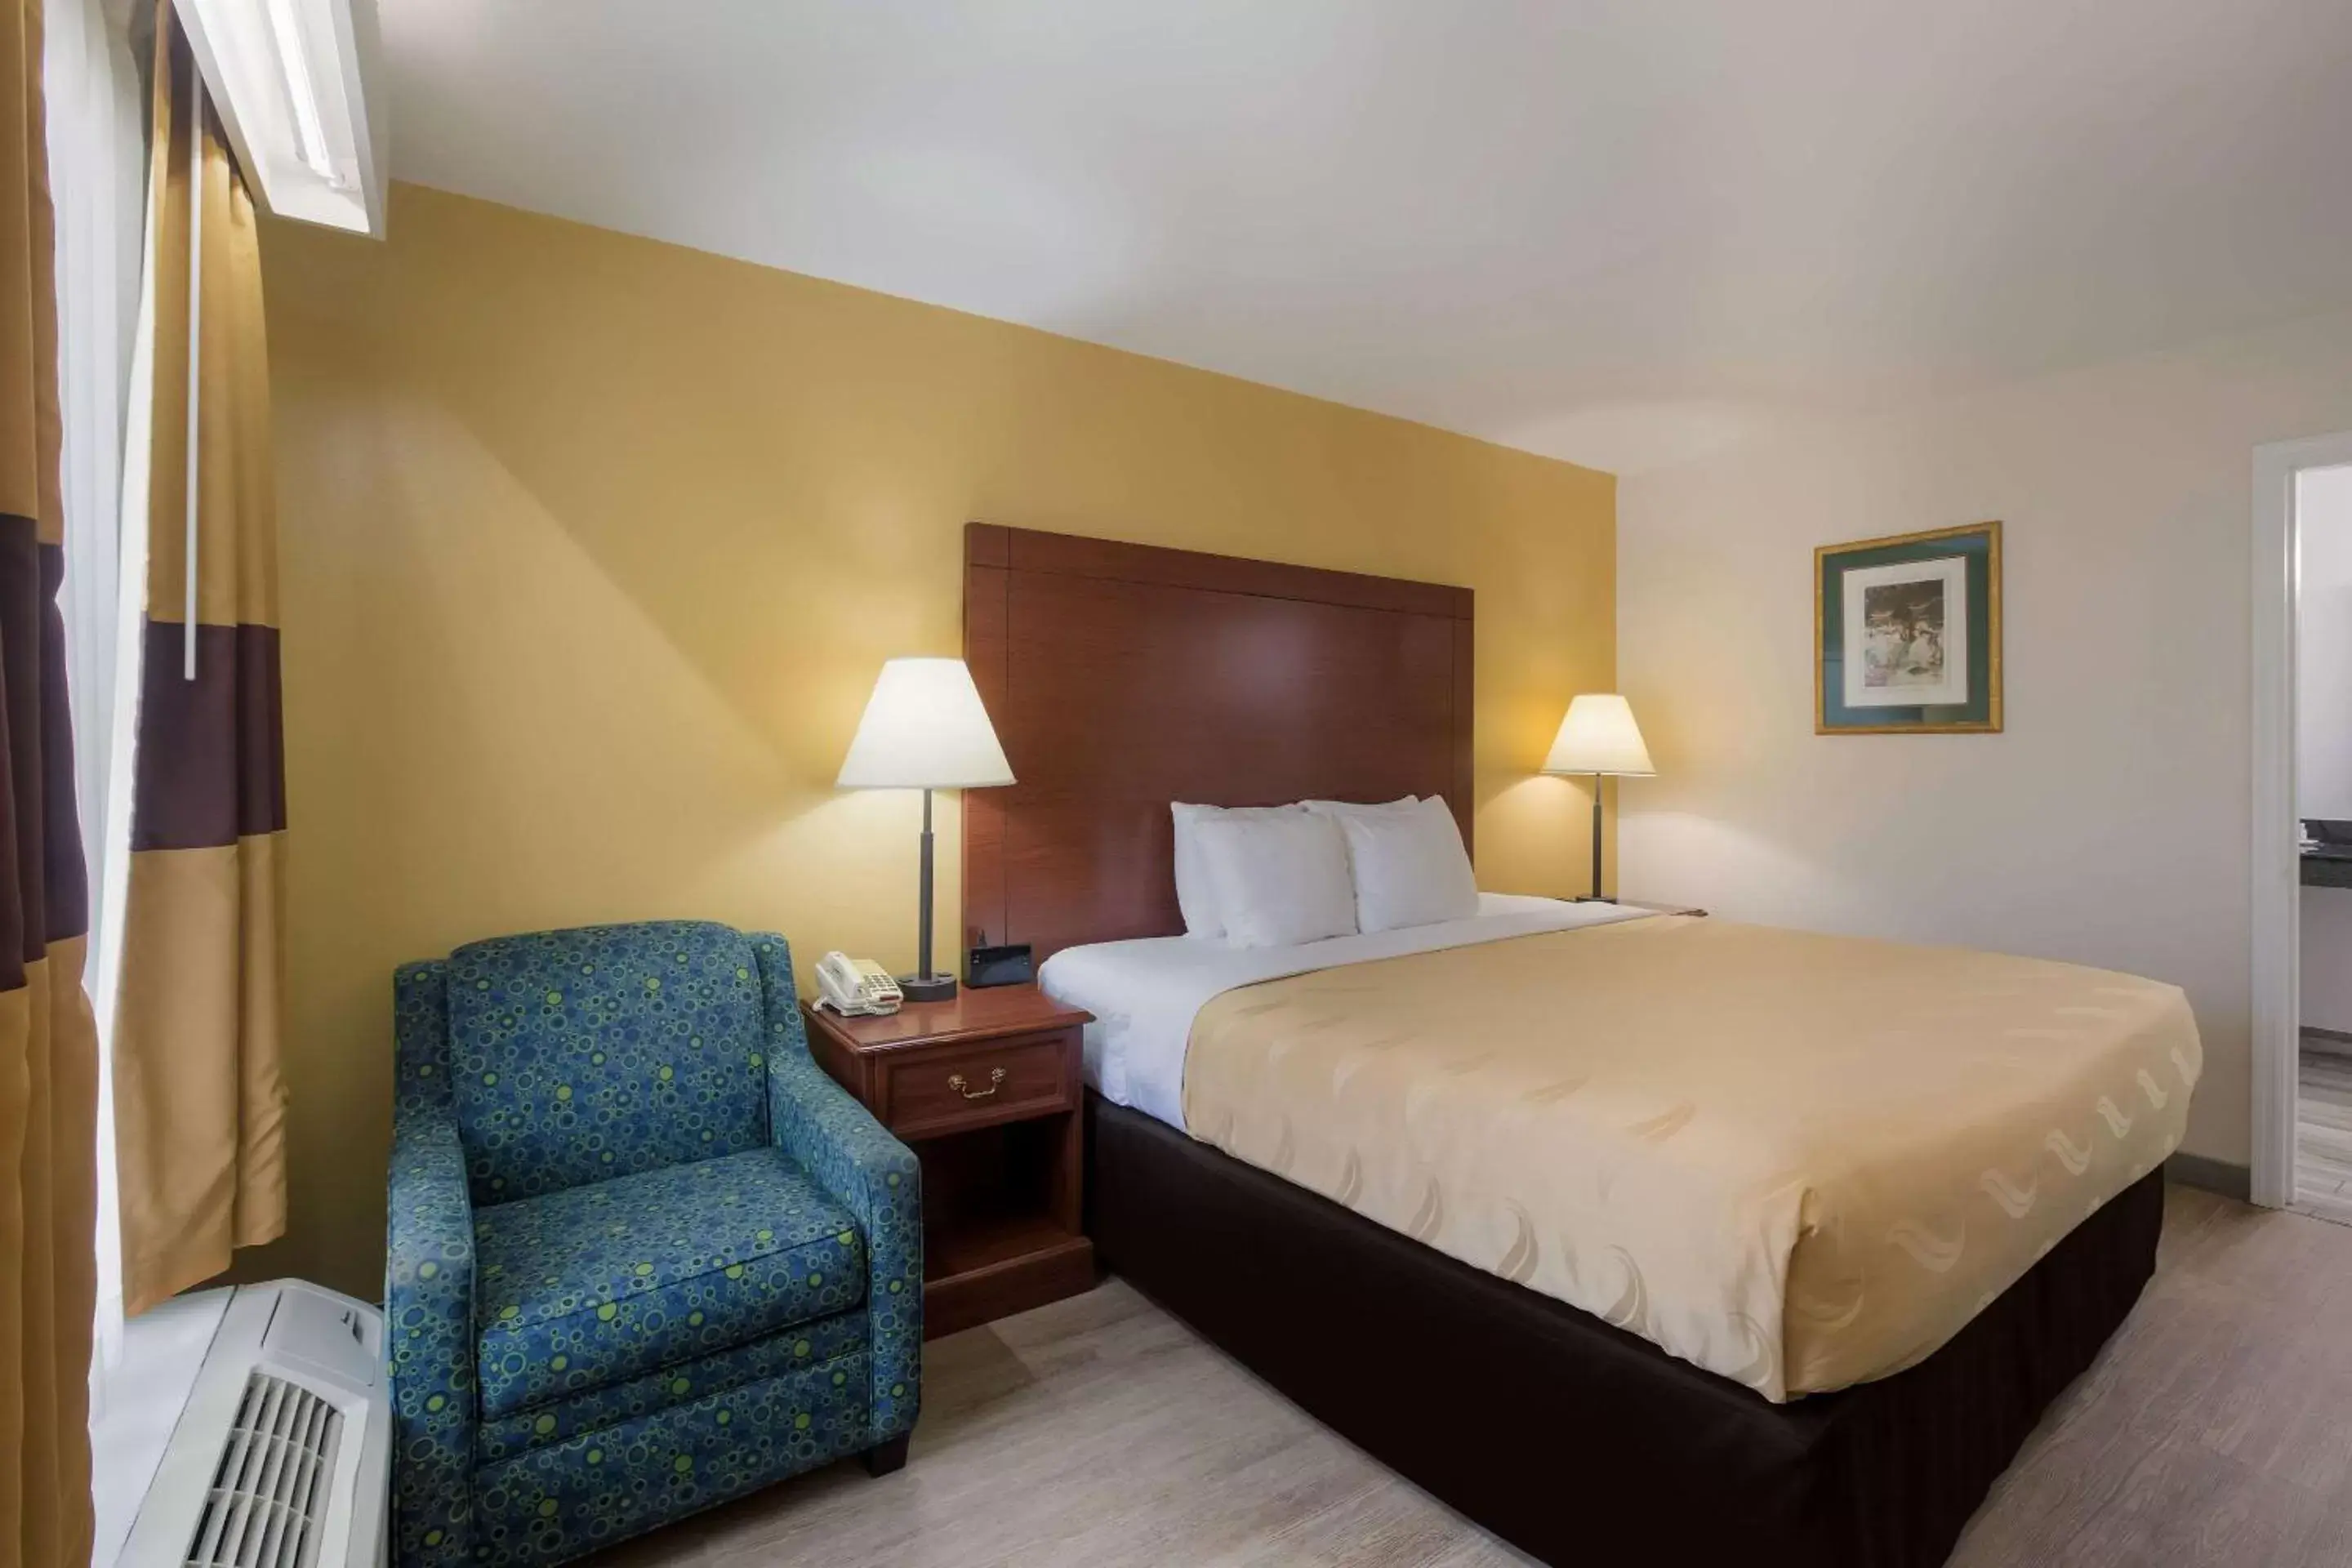 Bedroom, Bed in Quality Inn & Suites near Lake Oconee